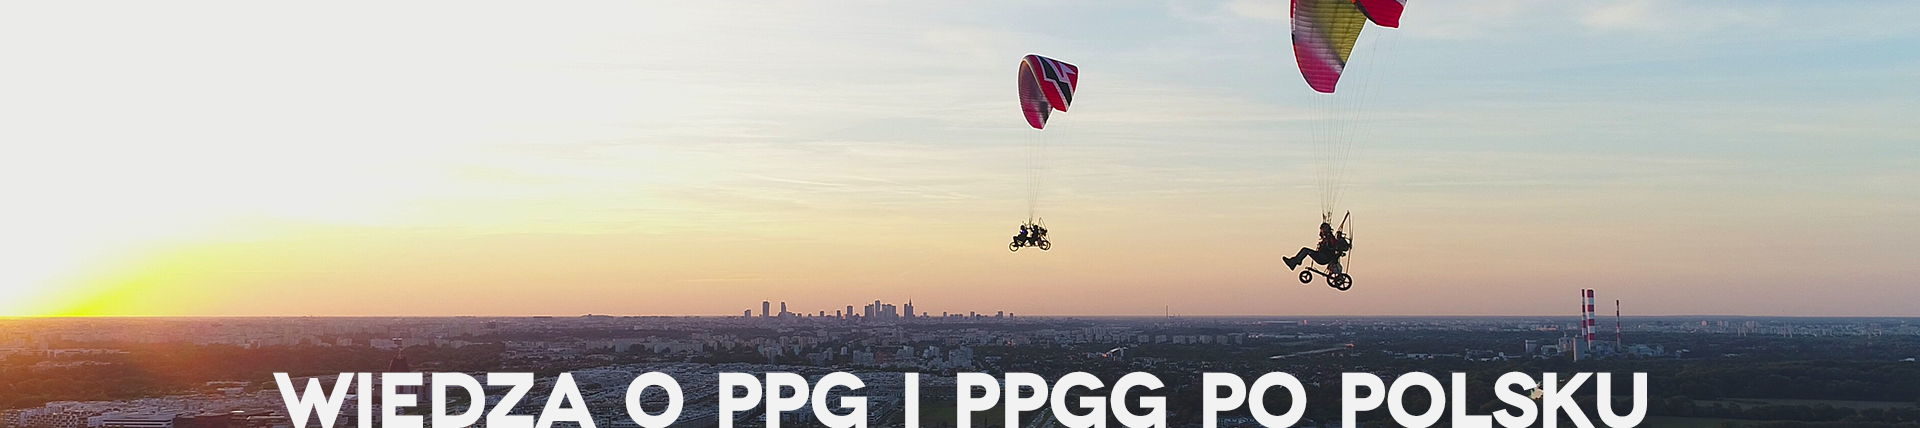 Wiedza o PPG i PPGG po polsku